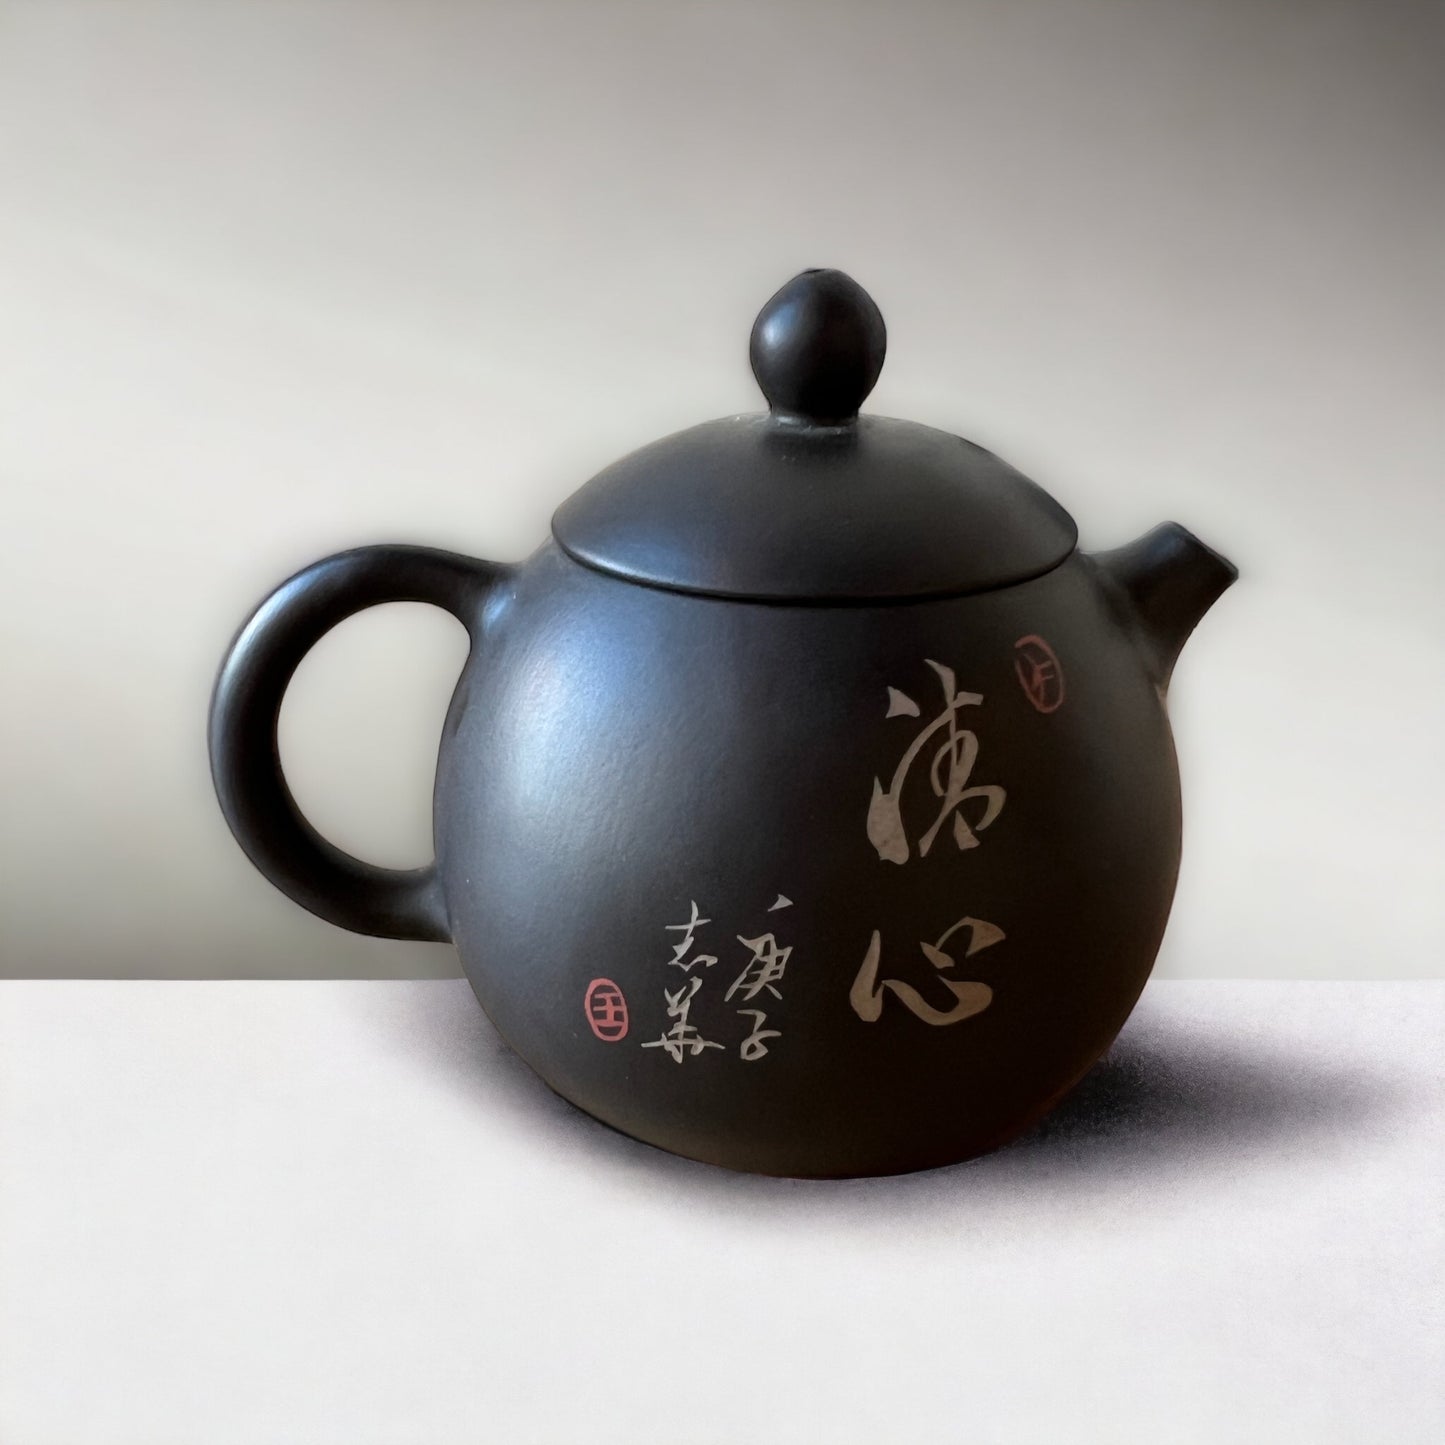 Jian Shui Clay “Zhu Qu” Teapot By Hong Xue Zhi